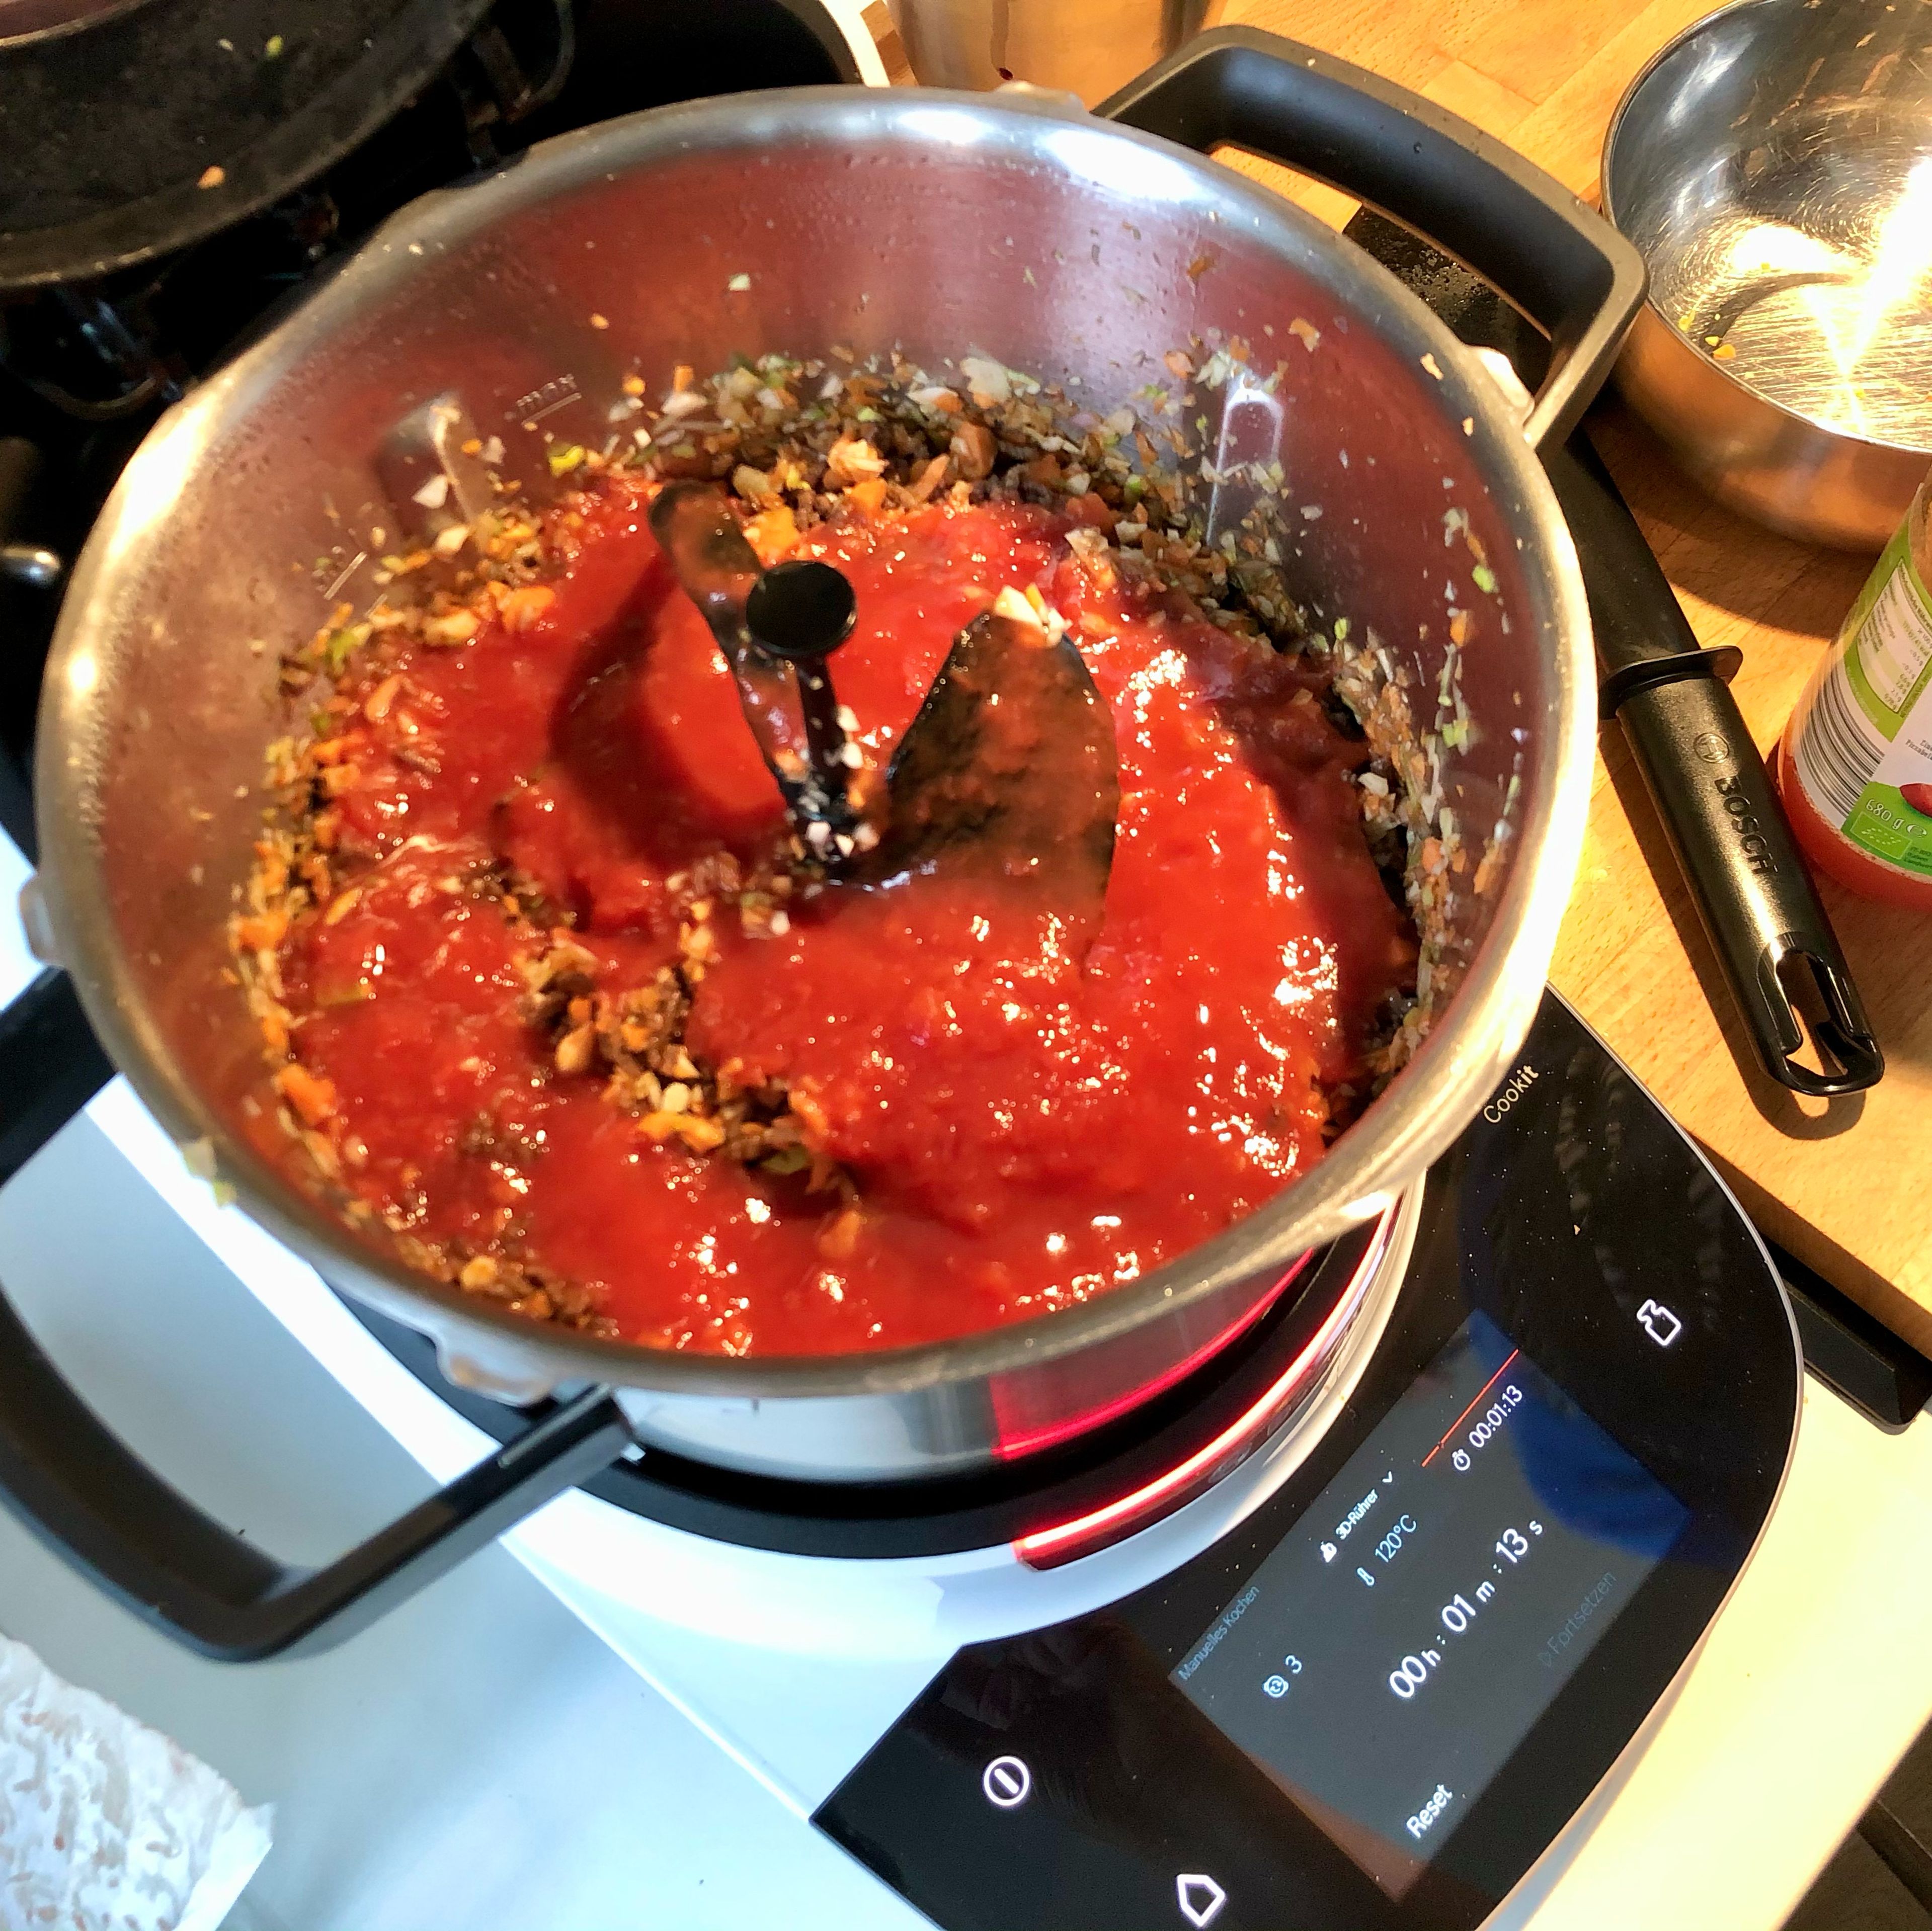 Den 3D-Rührer und den Topfdeckel einsetzen, ohne Messbecher. Gemüsewürfel und passierte Tomaten zugeben und bei geschlossenem Deckel (ohne Messbecher) köcheln lassen (3D-Rührer | Stufe 3 | 100°C | 30 Min.). Nach etwa 4 Minuten die Konsistenz kontrollieren: So viel Brühe zugießen, dass die Flüssigkeit sichtbar ist, die Bolognese aber nicht zu suppig wird. Nach etwa 30 Minuten ist die Bolognese fertig. Der Cookit hält sie anschließend auch warm, falls die Familie nicht so schnell am Tisch sitzt.